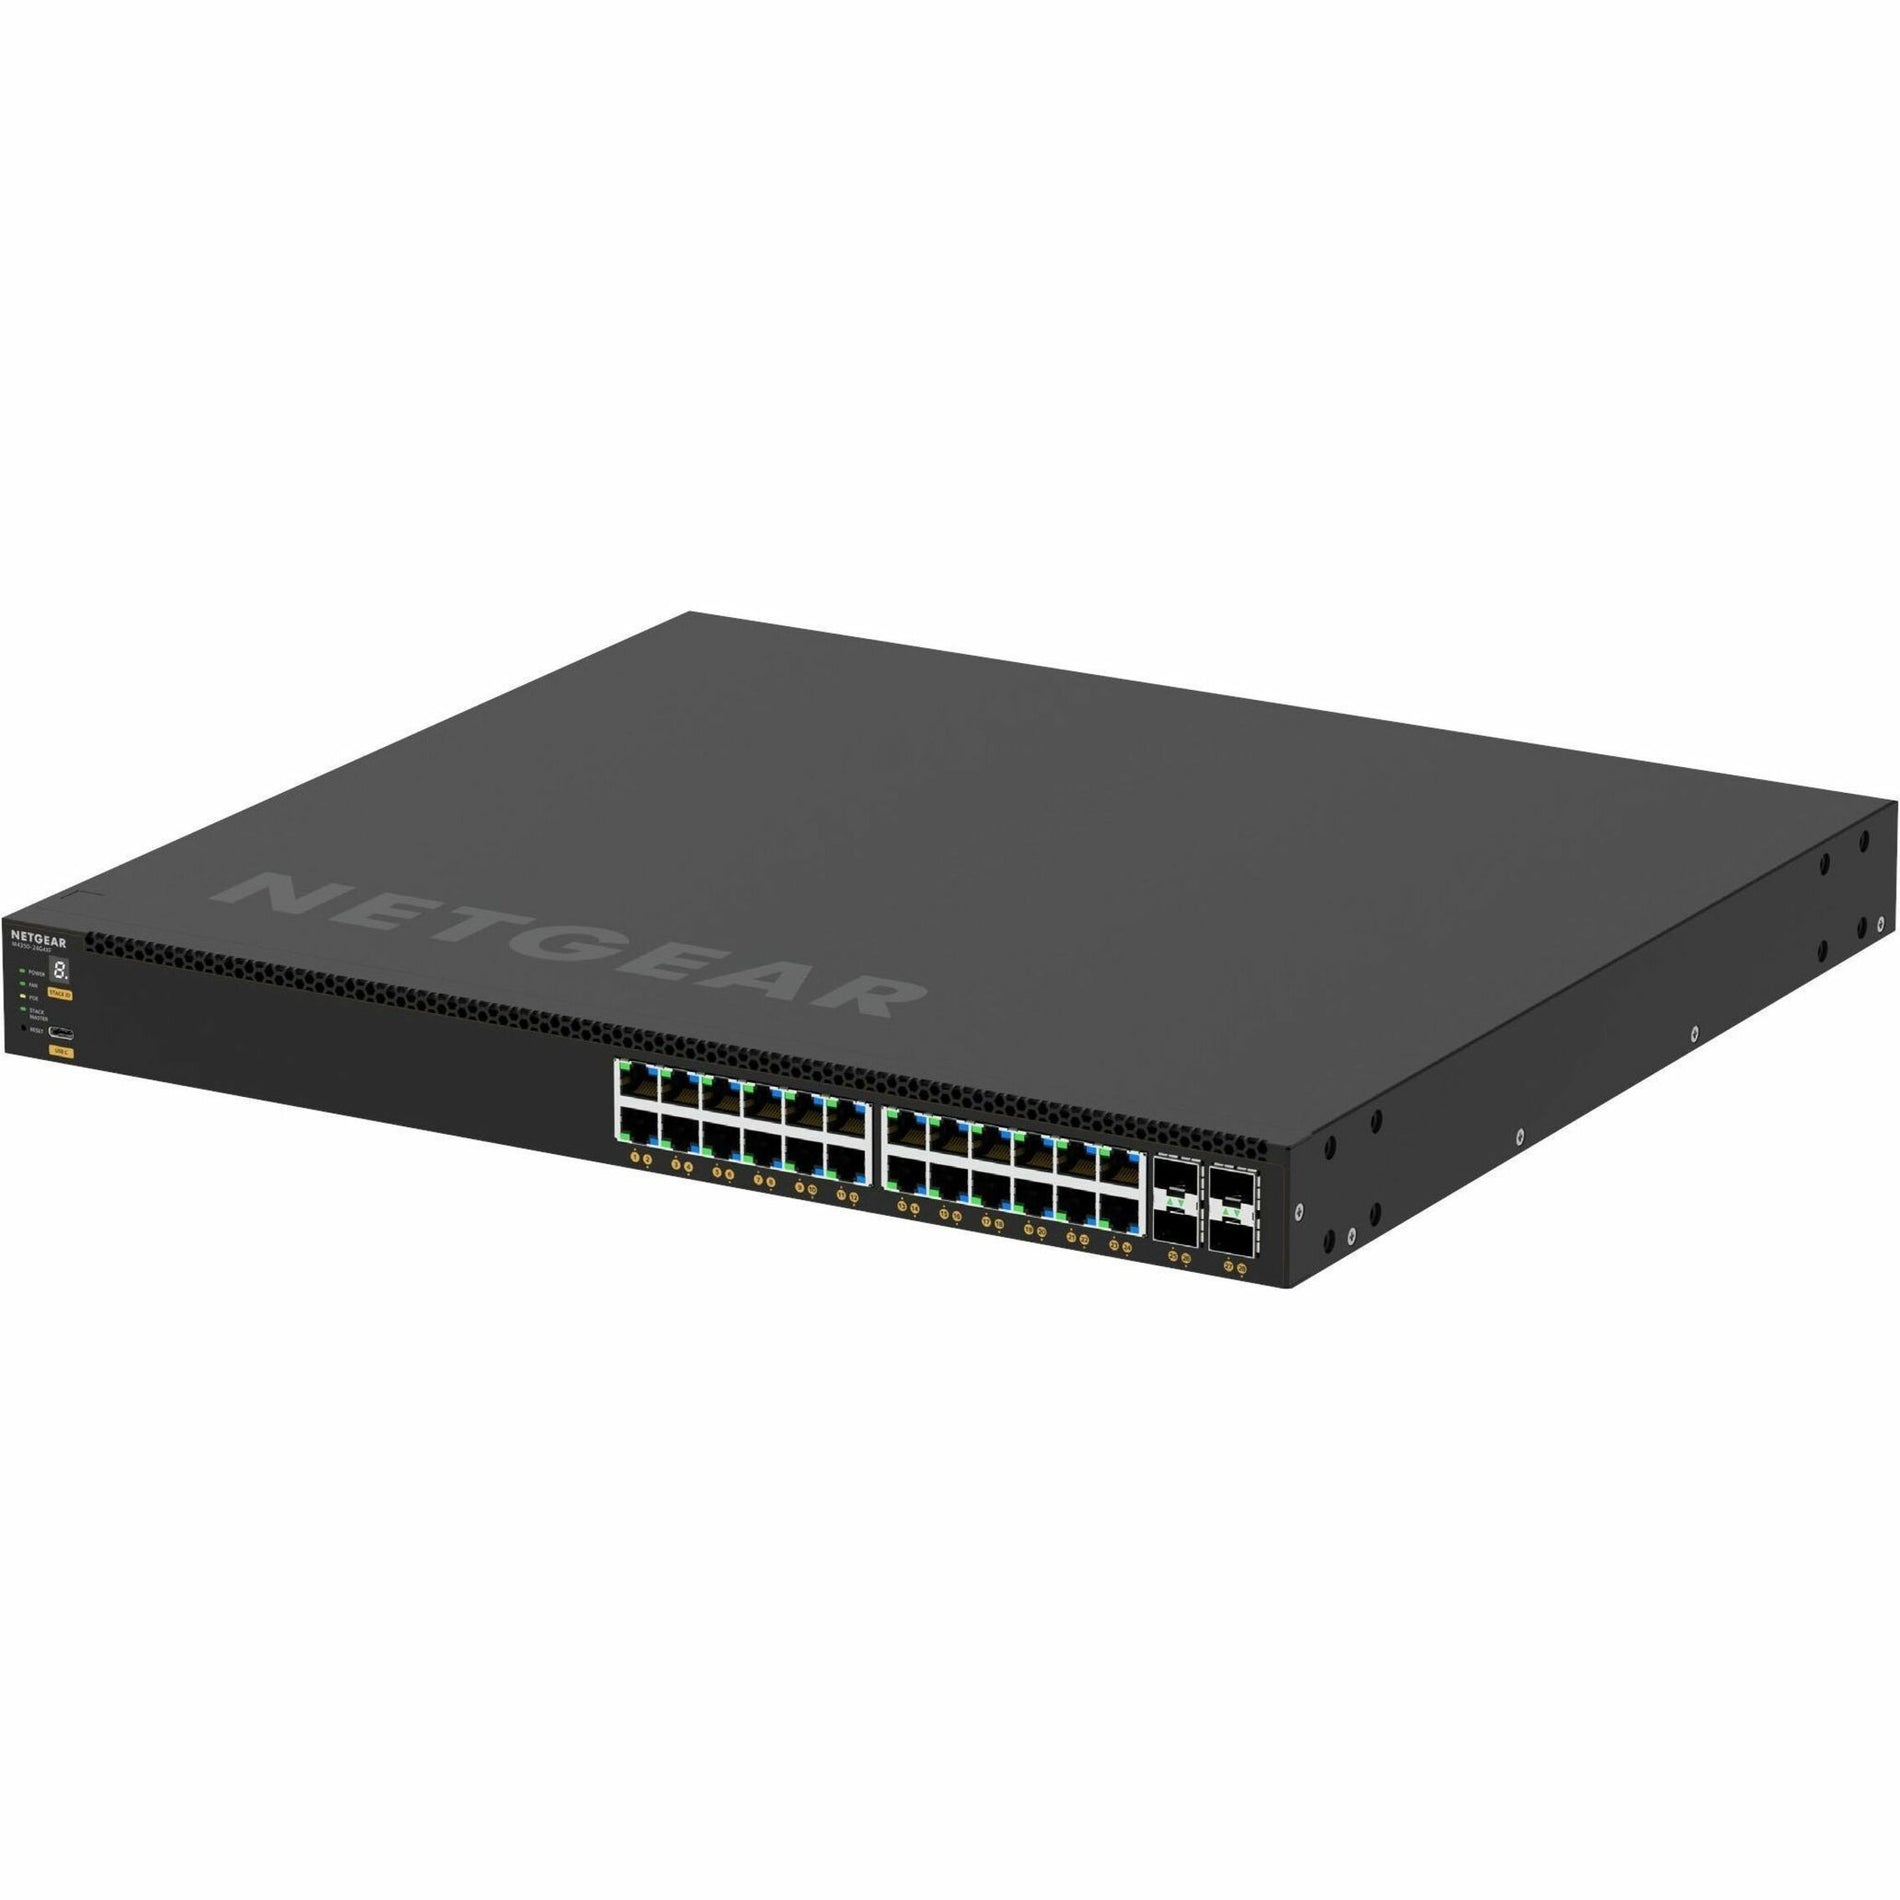 Netgear - 网件    GSM4328-100NES - GSM4328-100NES   AV Line - AV 线    M4350-24G4XF - M4350-24G4XF     Ethernet Switch - 以太网交换机   24-Port - 24 端口    Gigabit - 千兆位   PoE+ - PoE+   4-Port - 4 端口    10G - 10G   SFP+ - SFP+   Expansion Slots - 扩展插槽